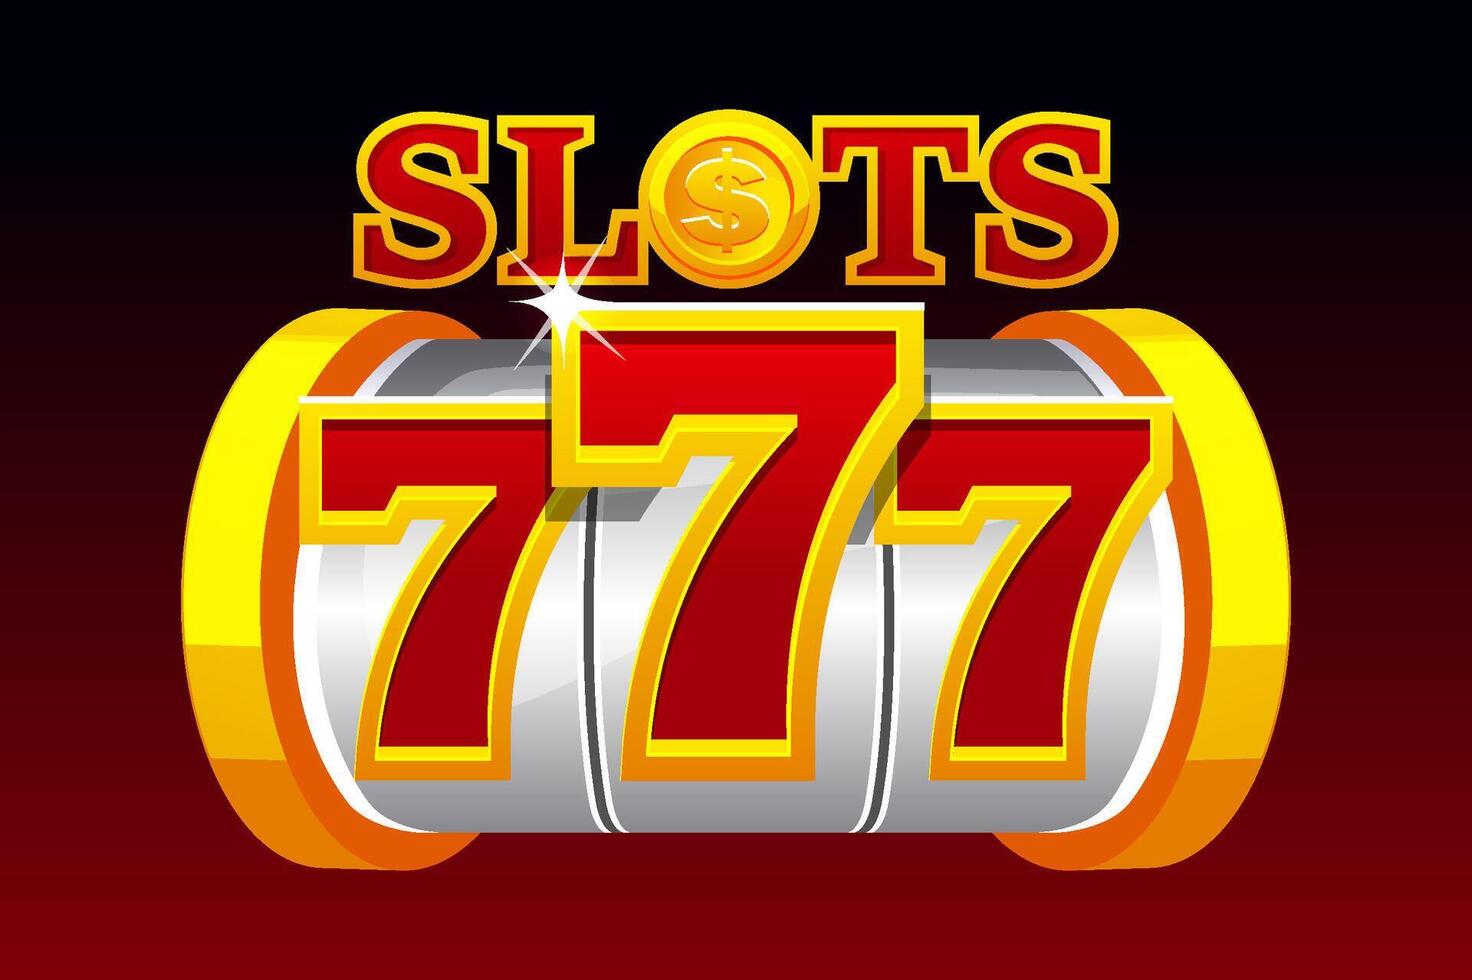 Slot Maschine 777. golden und rot Banner zum ein Kasino Spiel. vektor